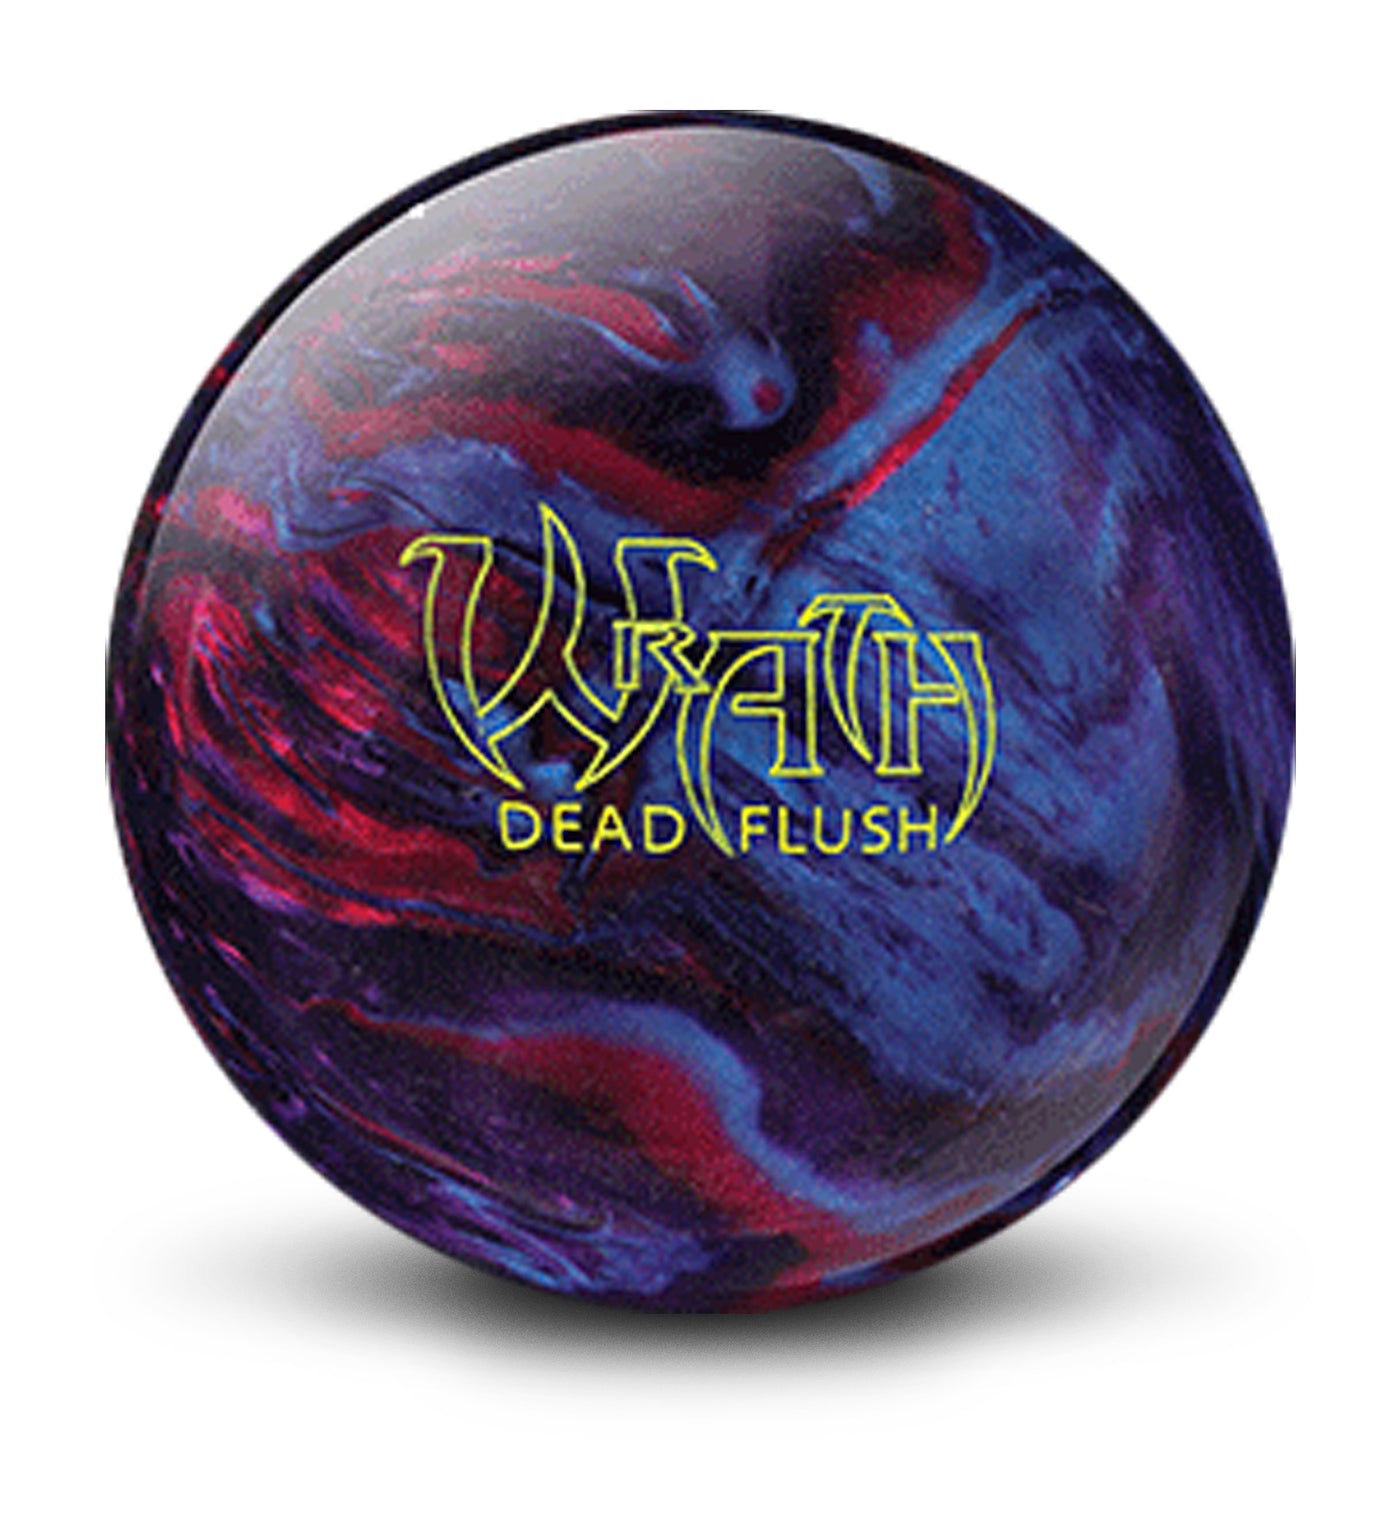 Wrath Dead Flush bowling ball